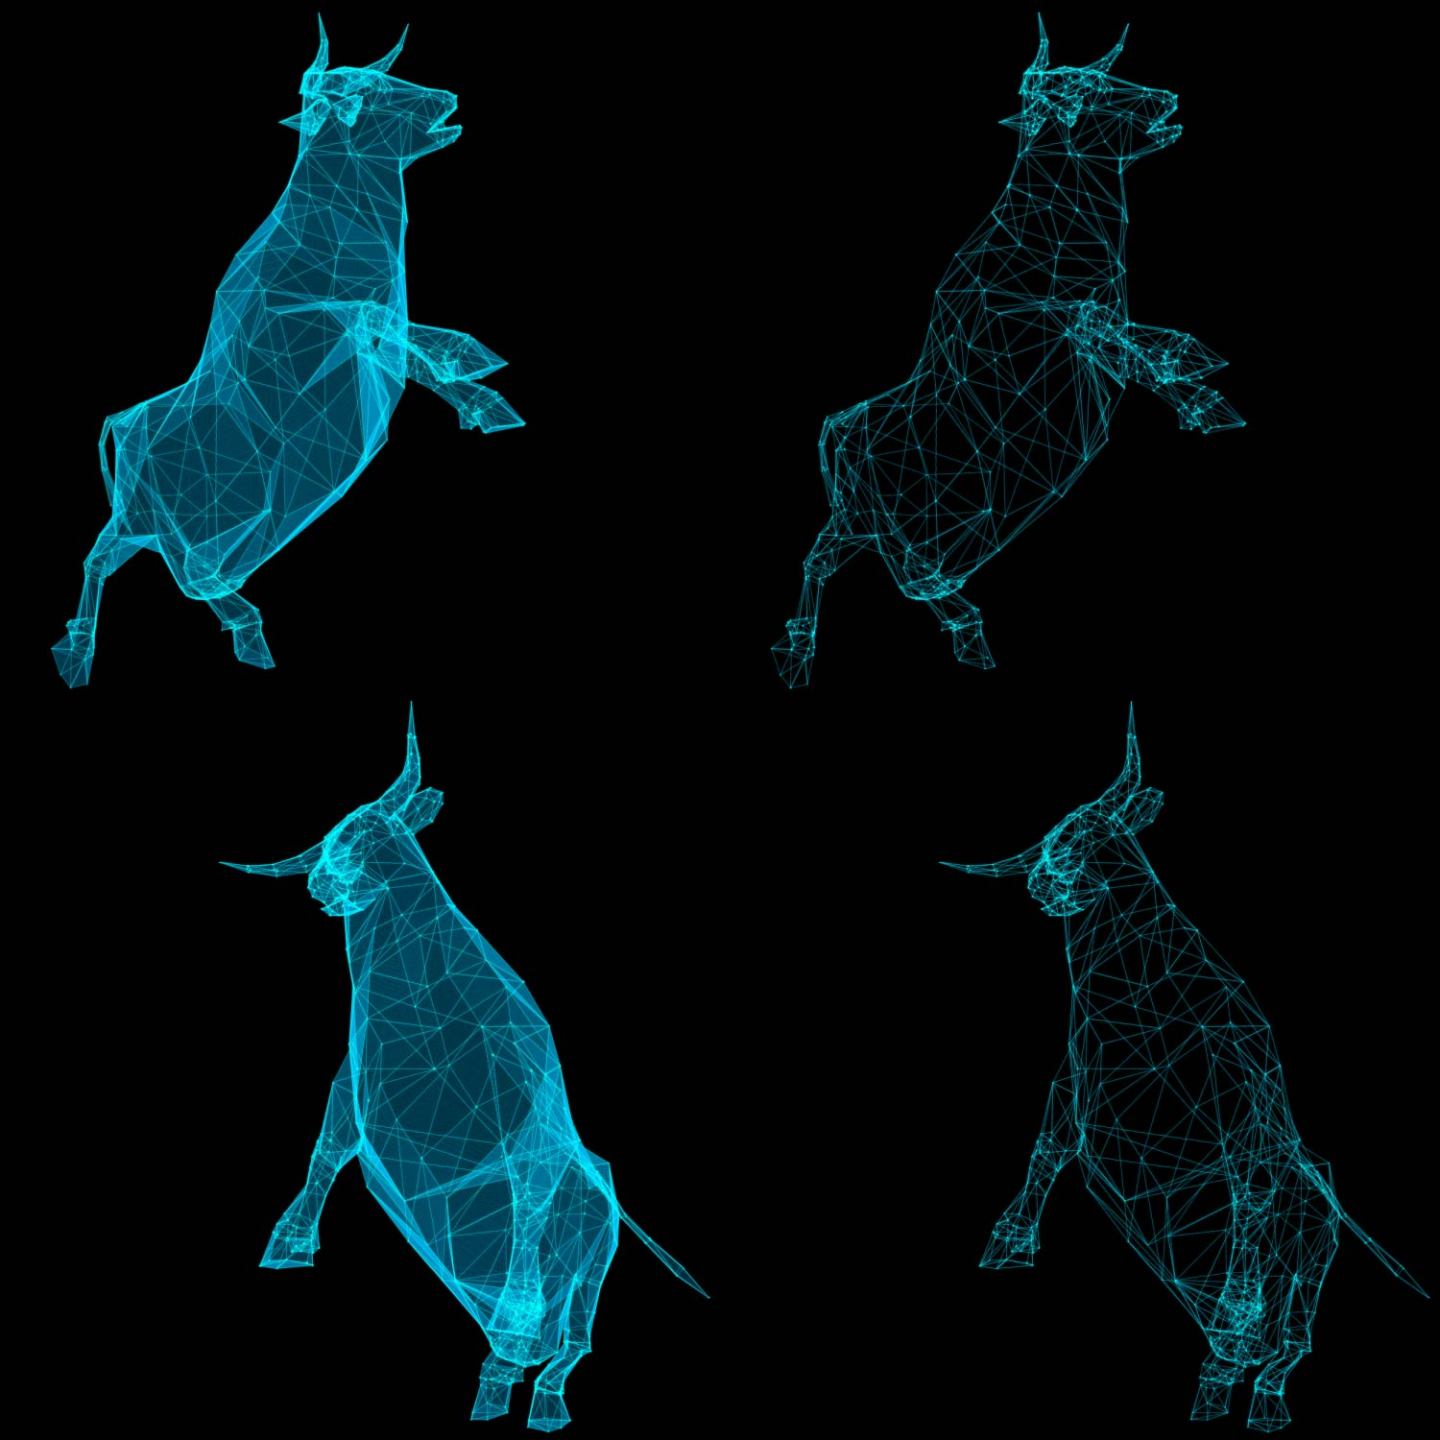 科技点线牛奔跑2组角度各含2种不同形态